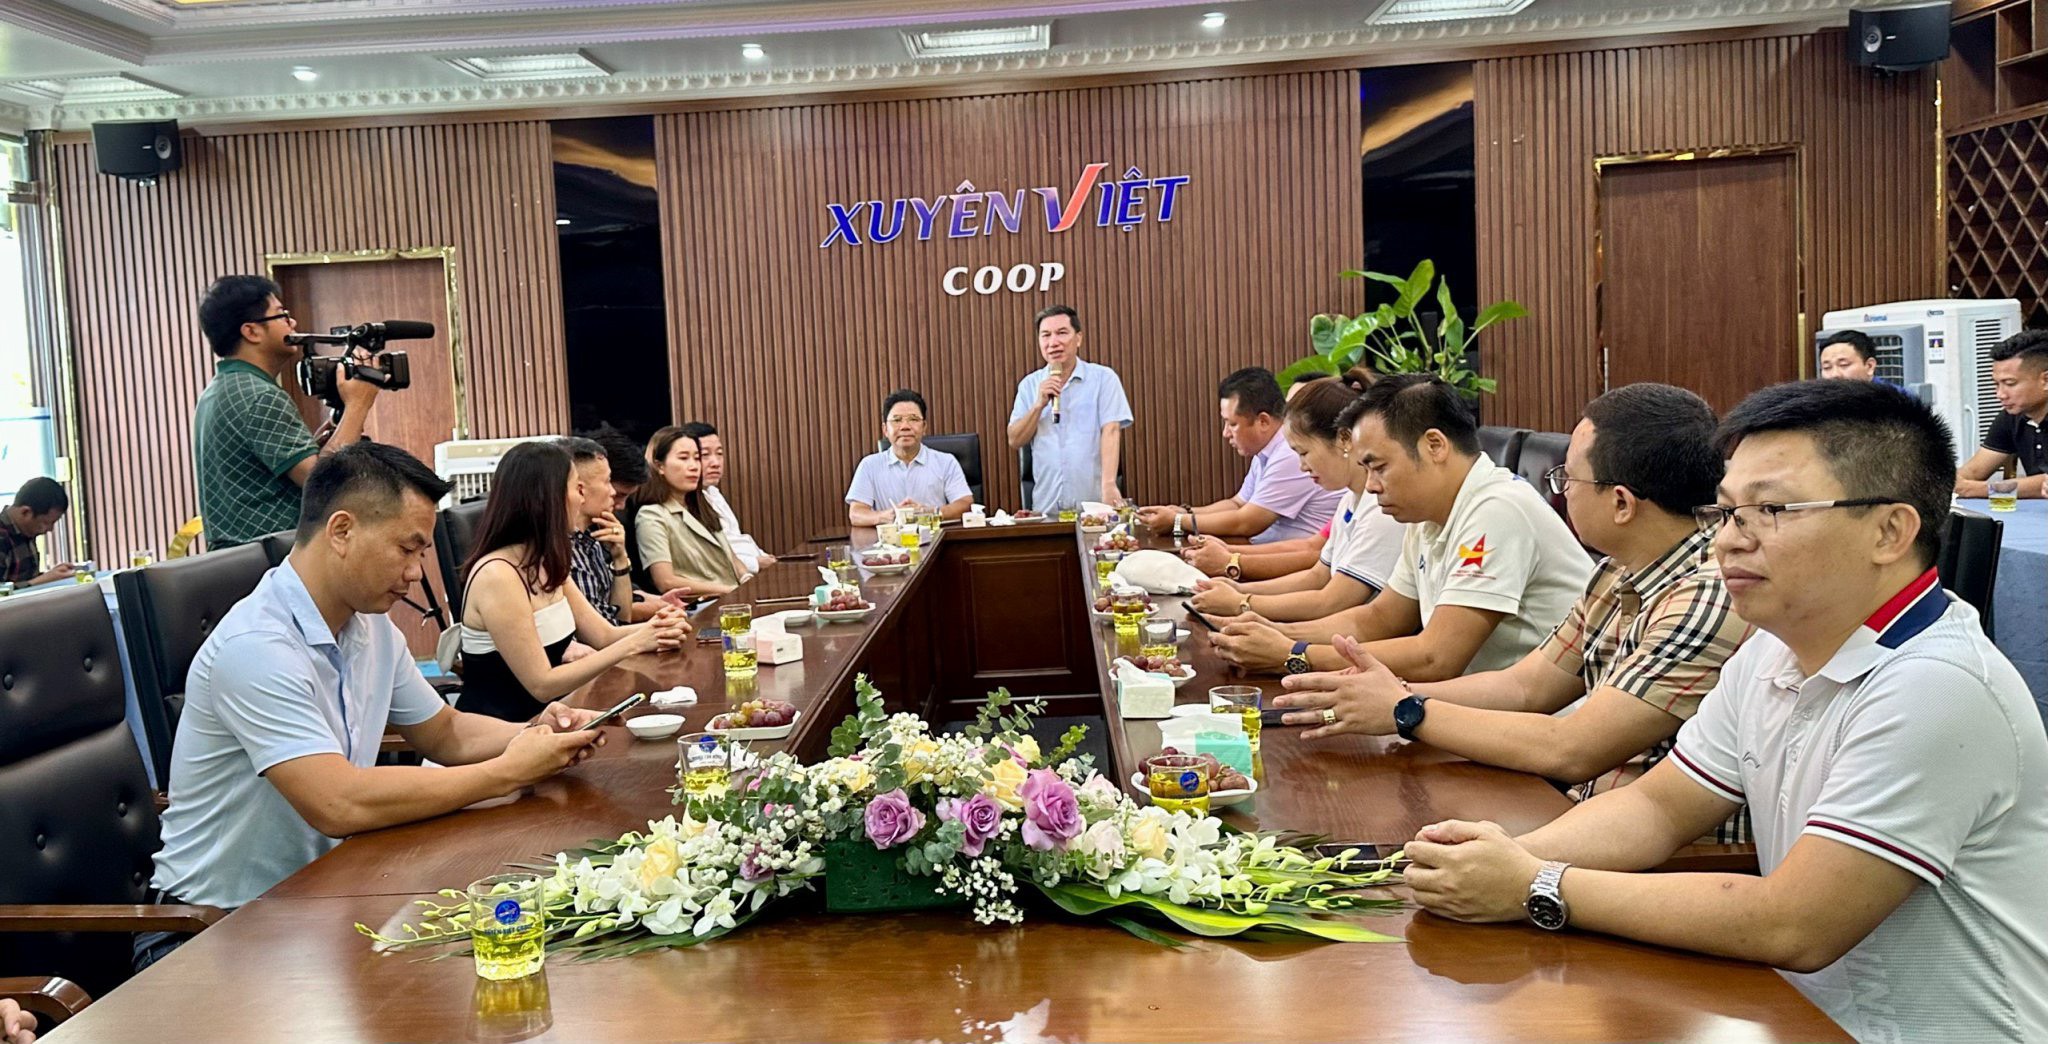 Chương trình đến thăm, kết nối, giao lưu tại các Doanh nghiệp Hội viên cụm huyện Gia Lộc, Tứ Kỳ, Ninh Giang.